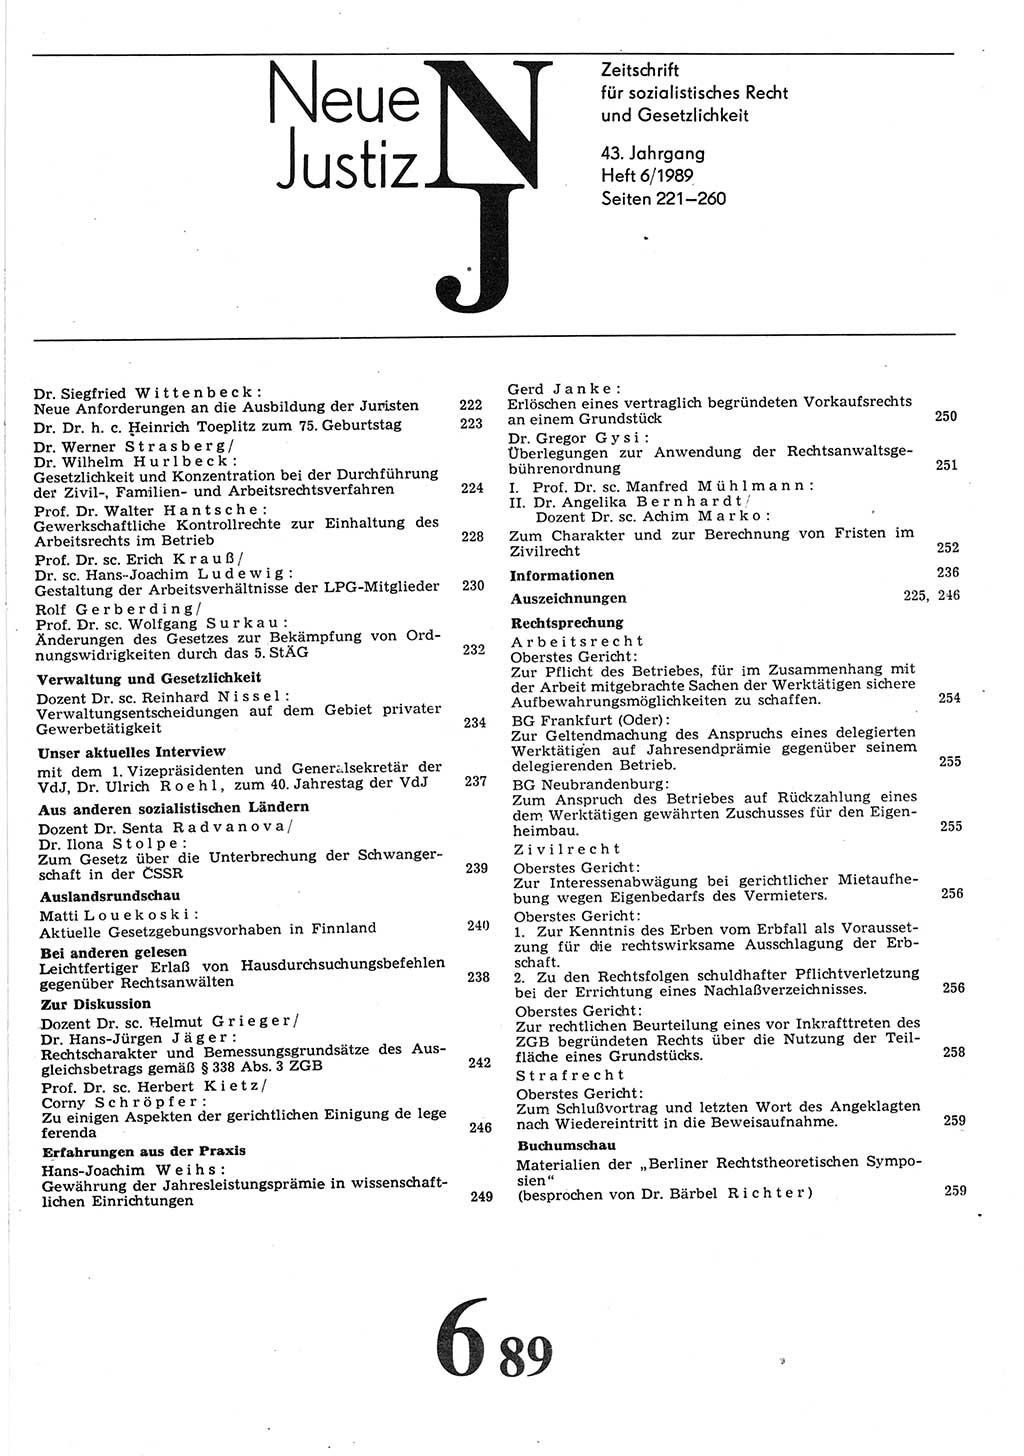 Neue Justiz (NJ), Zeitschrift für sozialistisches Recht und Gesetzlichkeit [Deutsche Demokratische Republik (DDR)], 43. Jahrgang 1989, Seite 221 (NJ DDR 1989, S. 221)